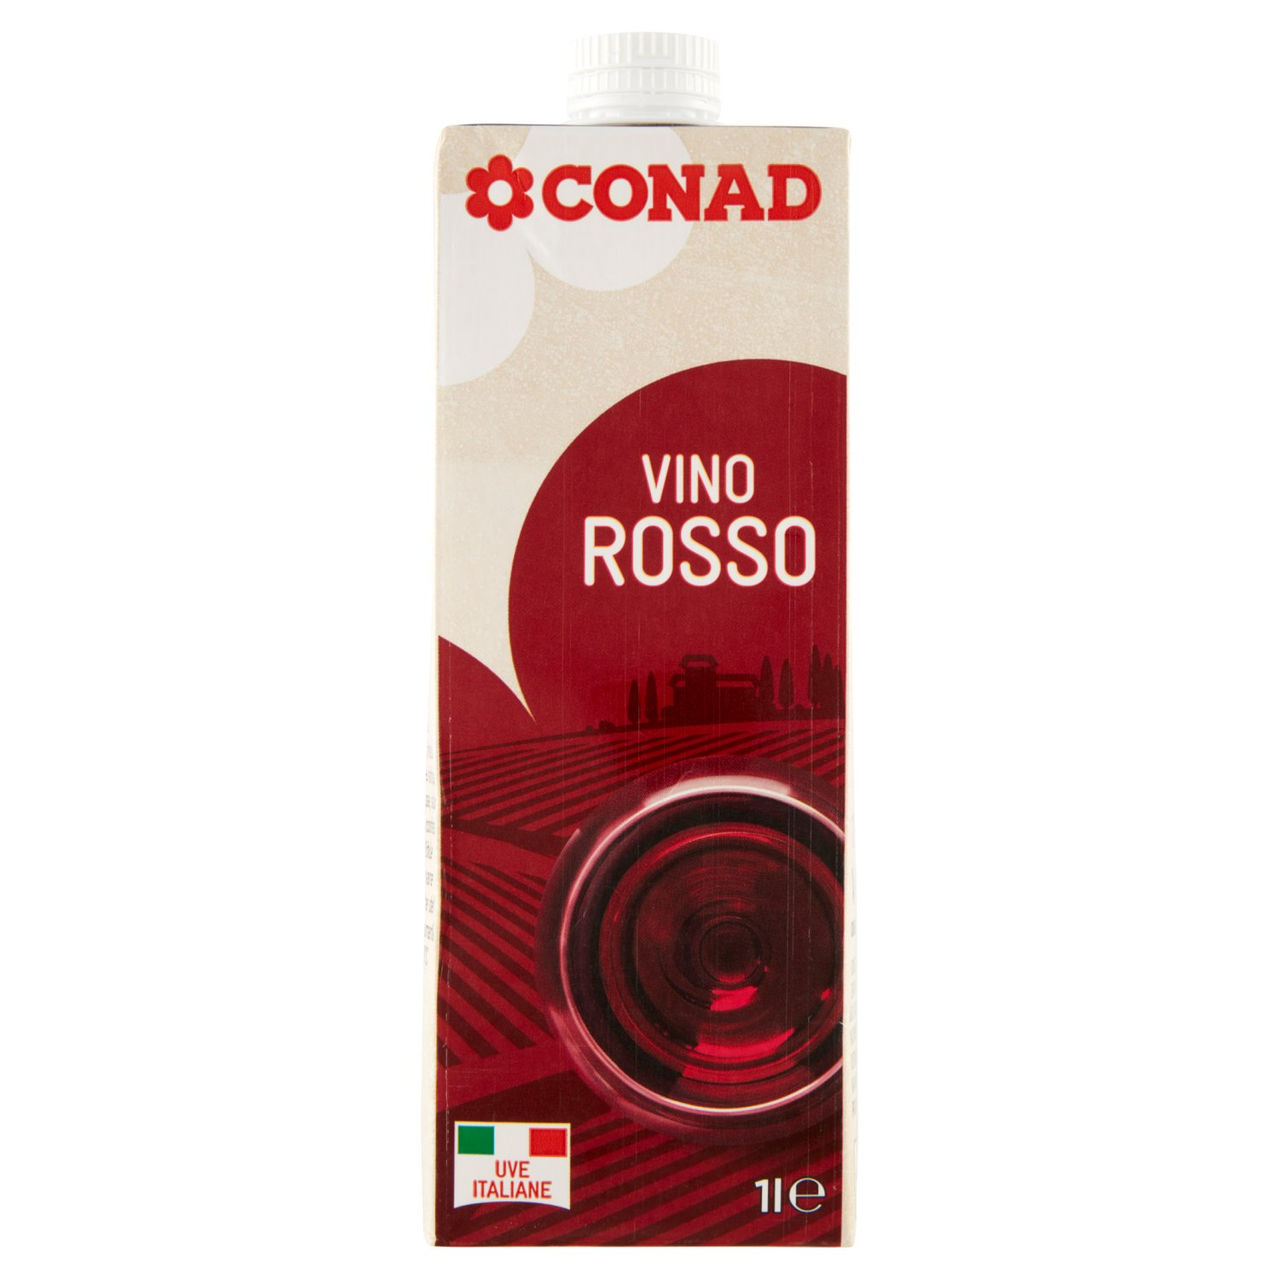 Vino Rosso 1 l Conad in vendita online